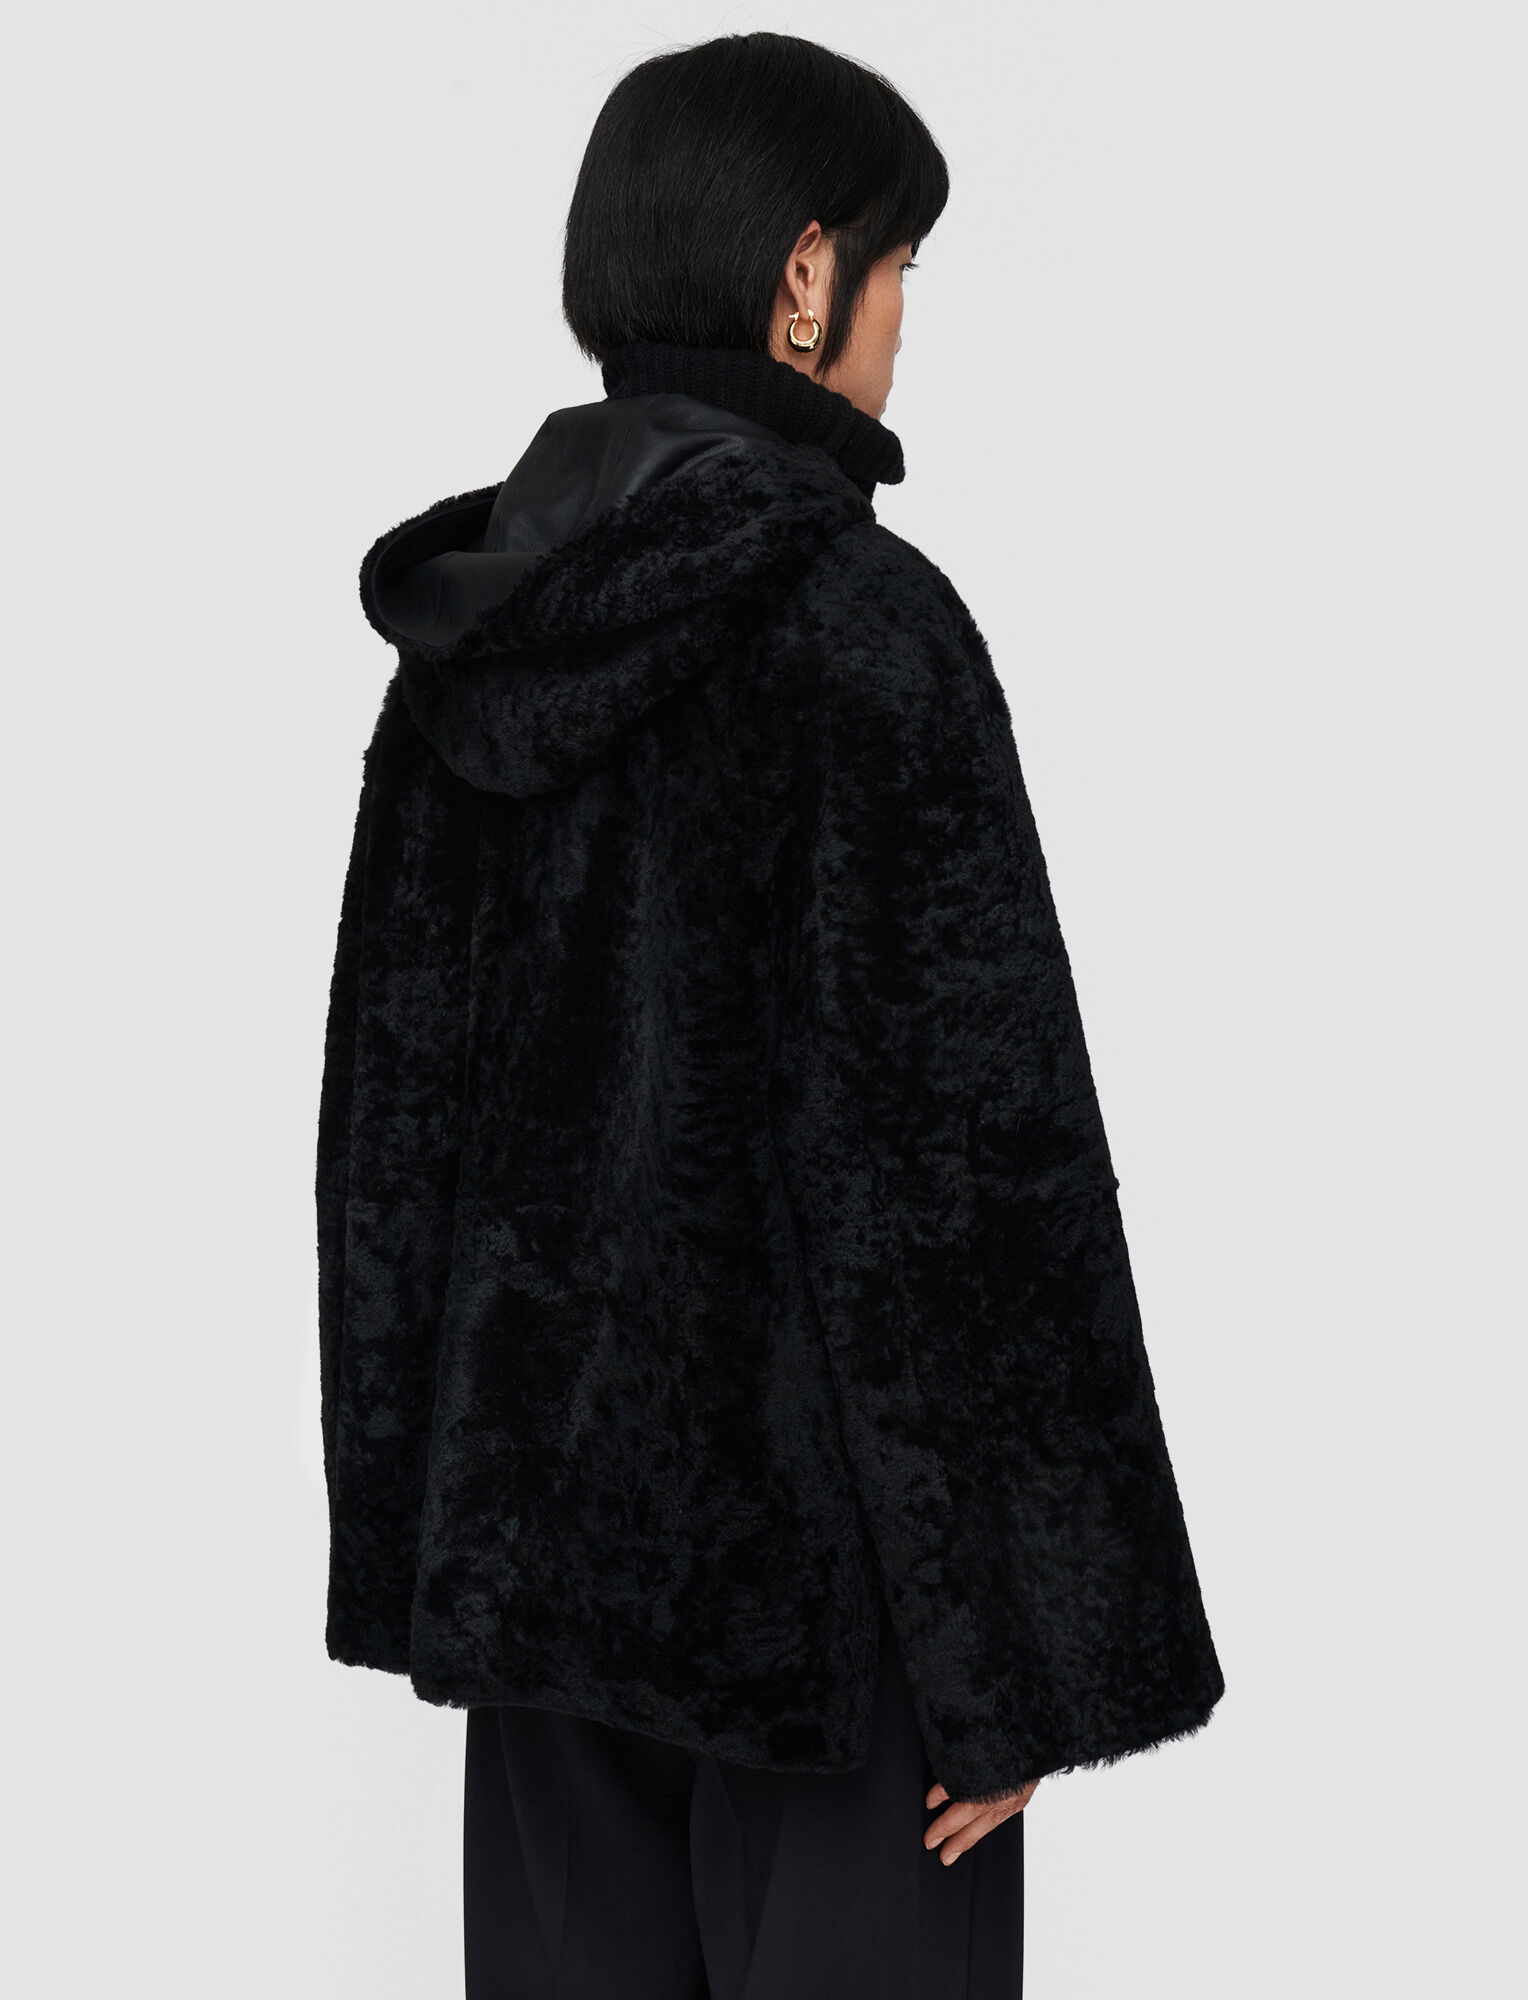 Joseph, Manteau Cosser réversible en peau lainée, in Black